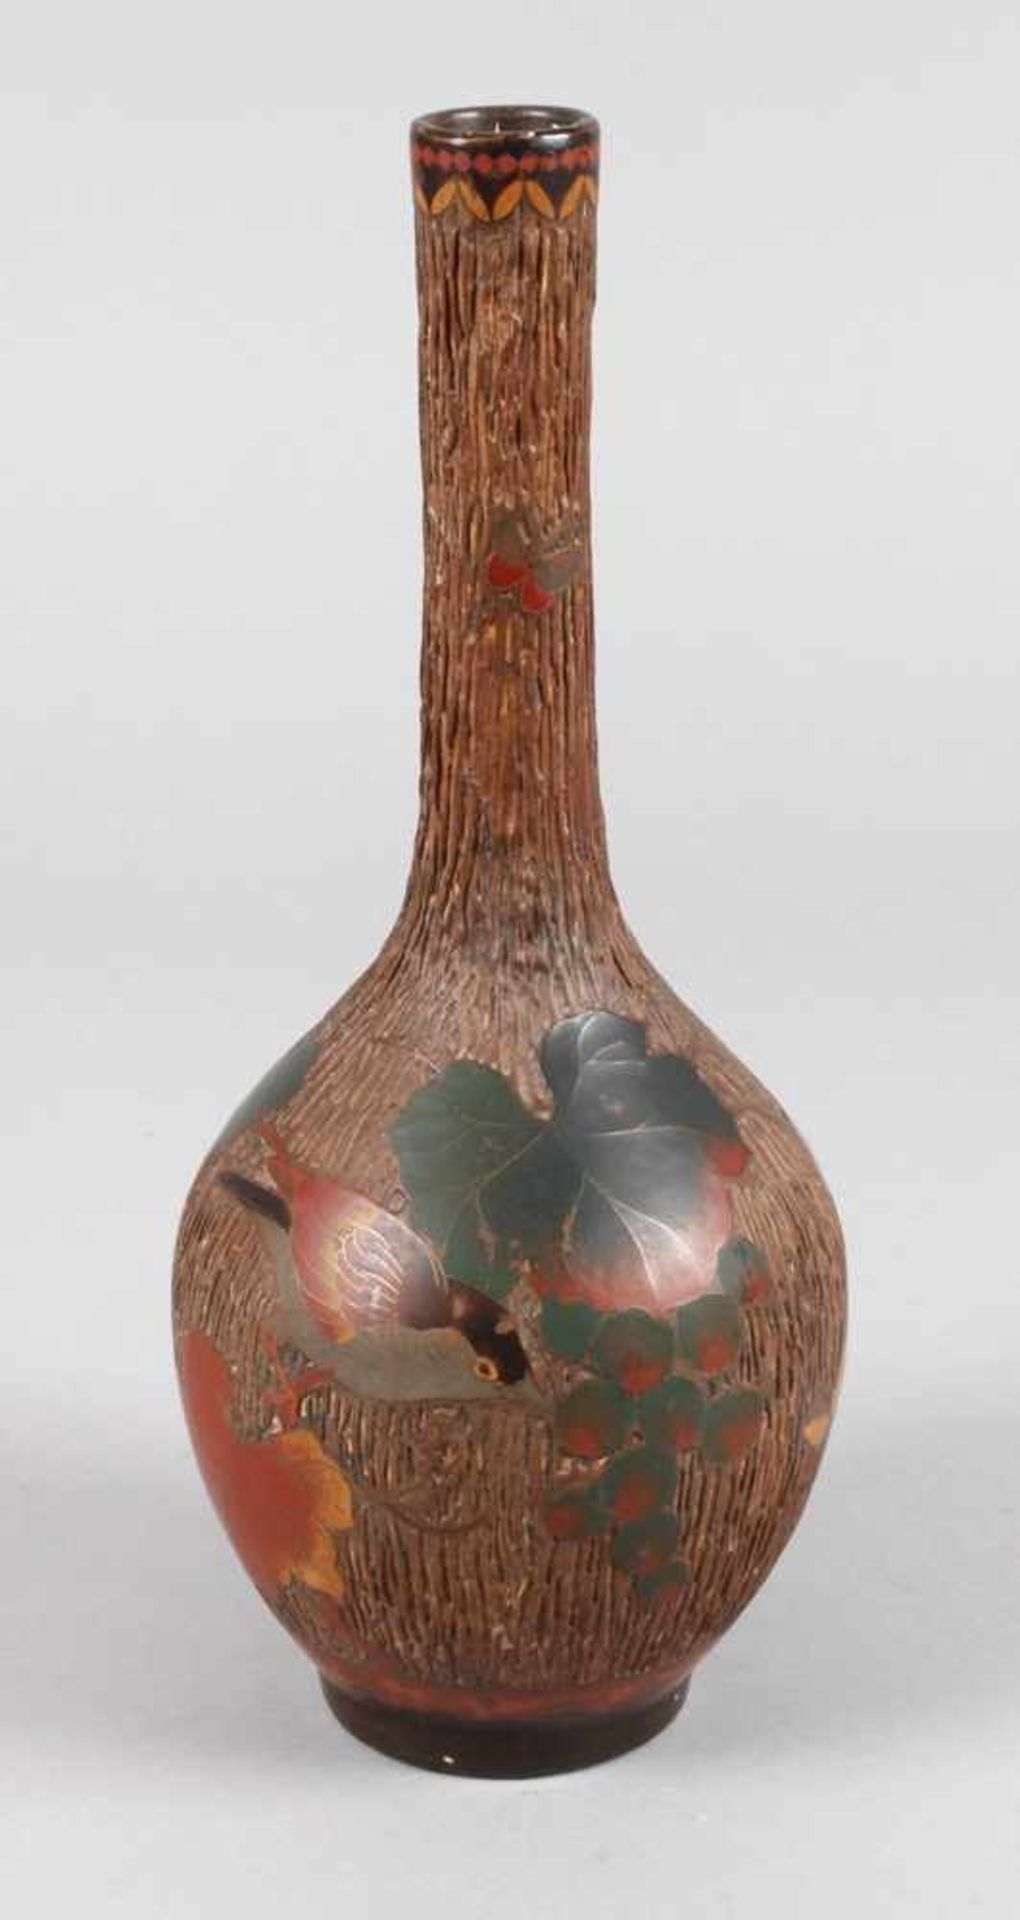 Vase mit Cloisonnéauflagenum 1900, ungemarkt, Steingut geritzt und matt bemalt, die Oberfläche in